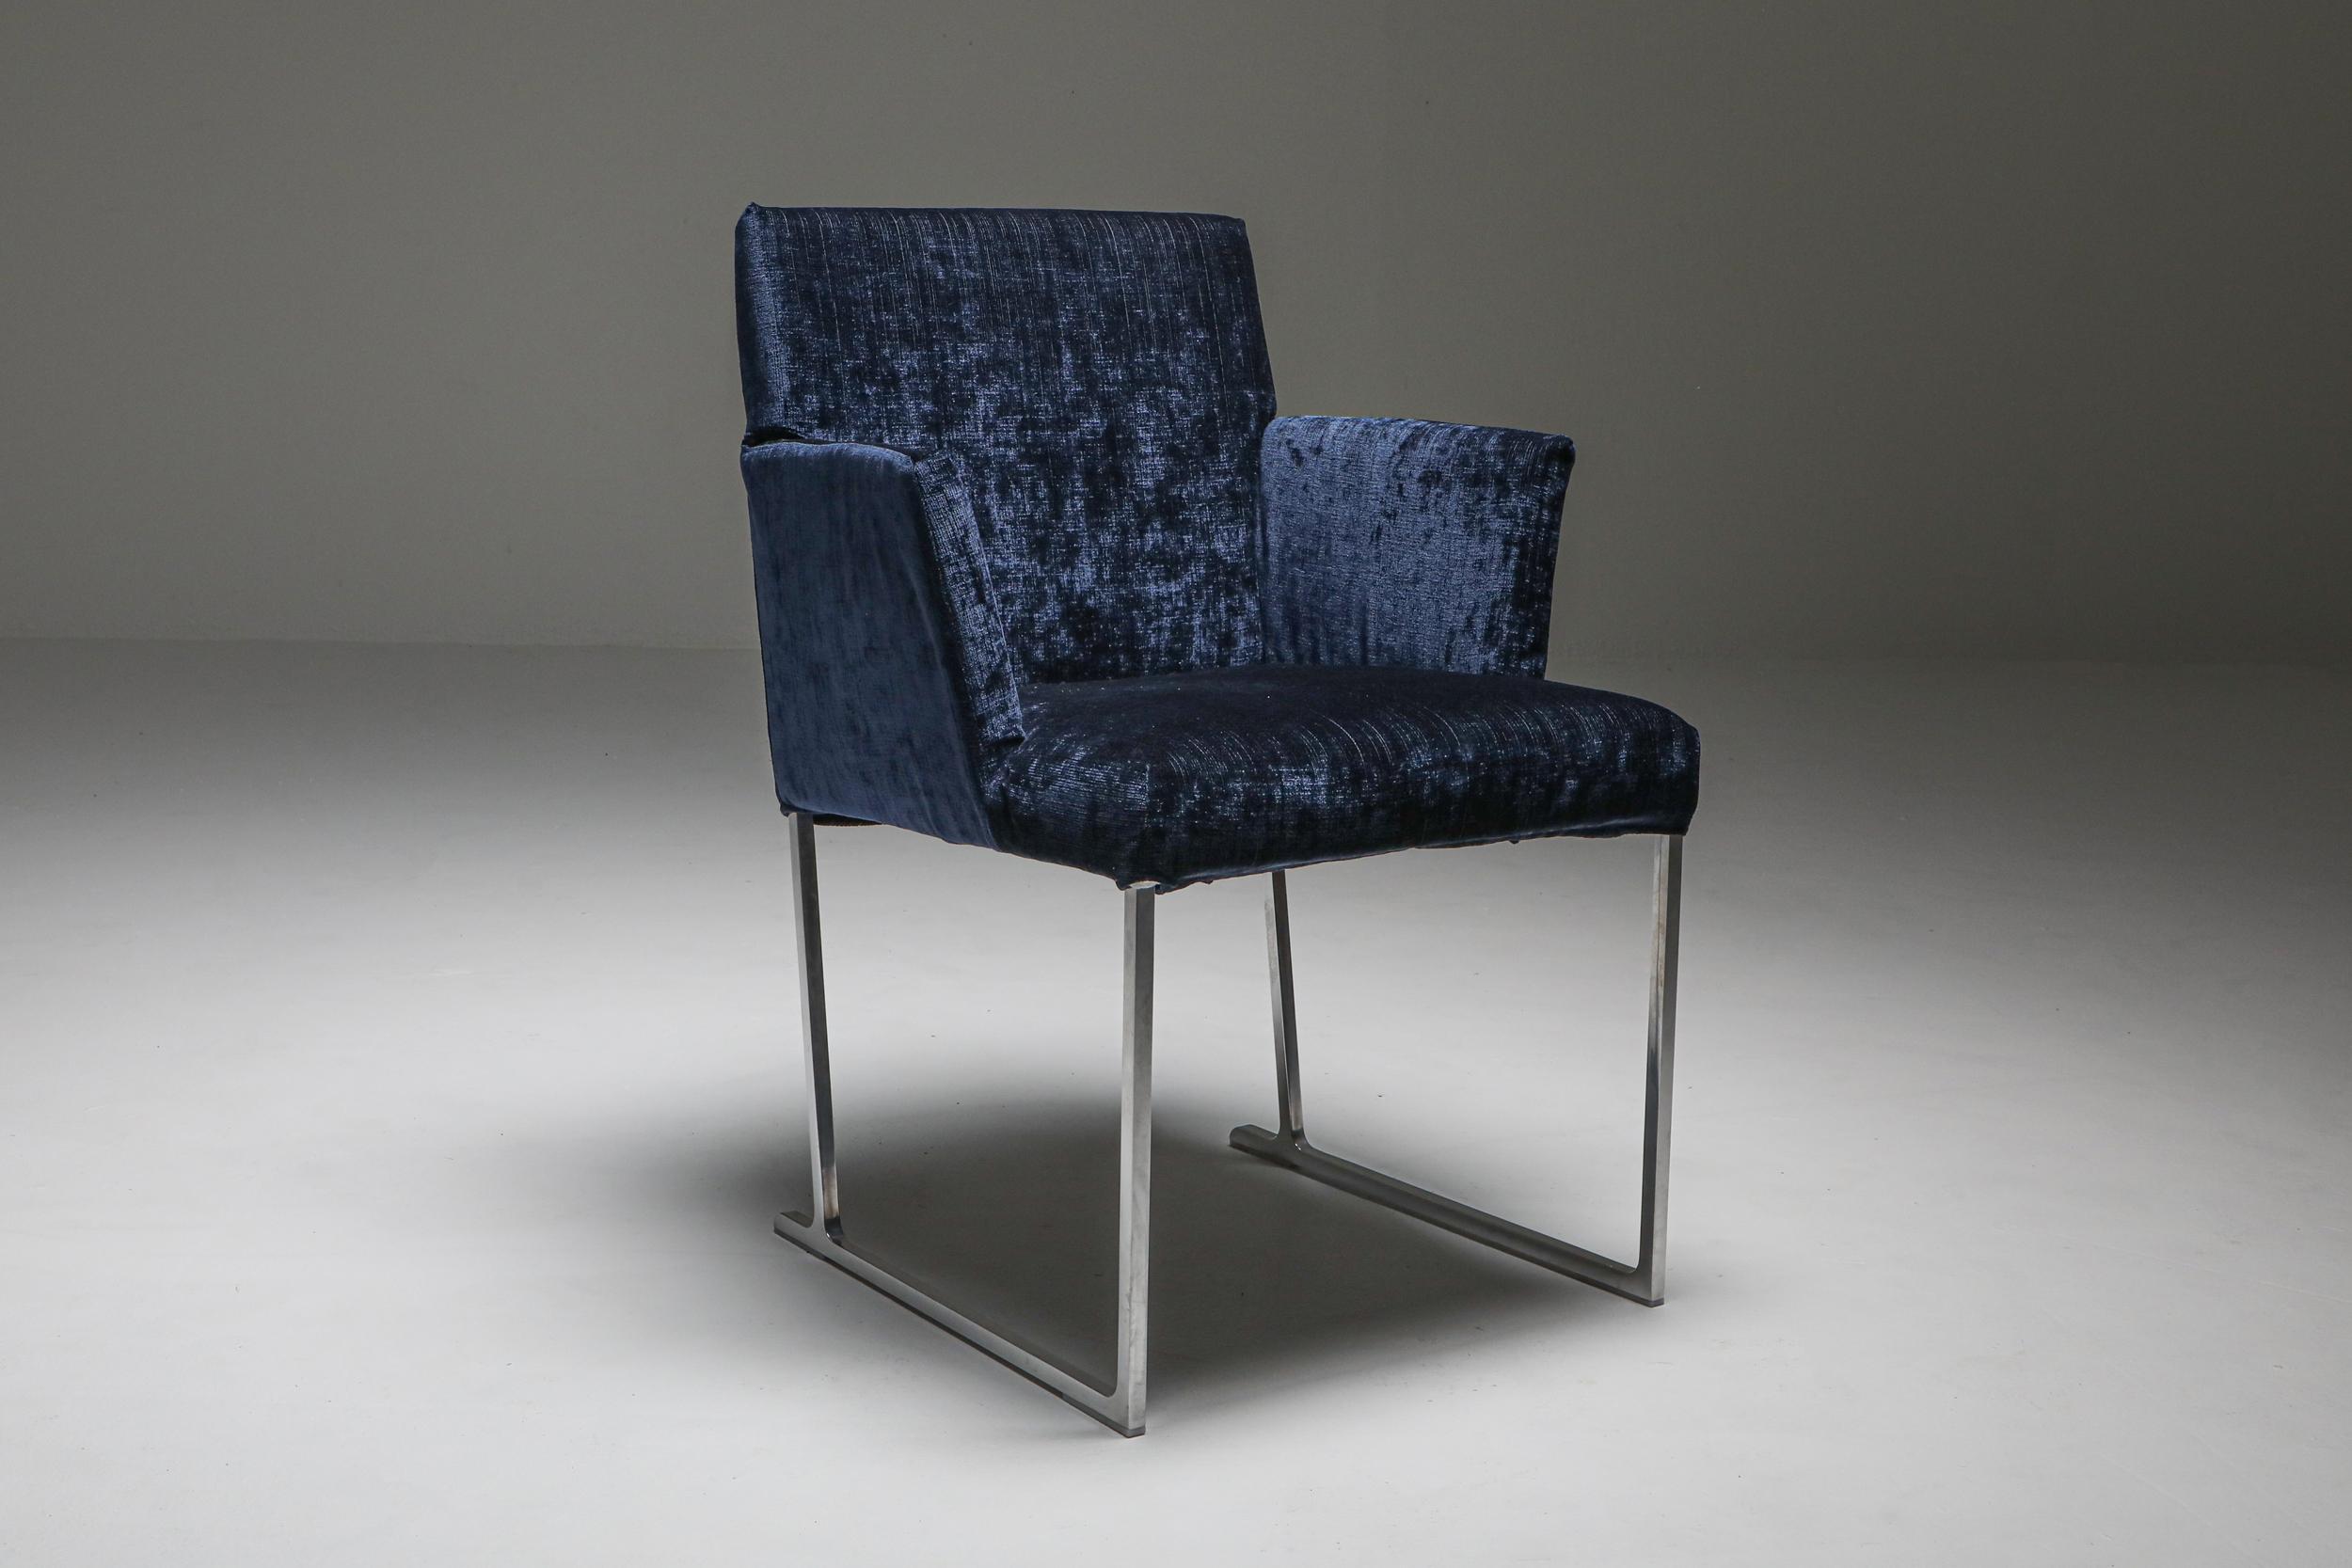 Solo Chairs by Antonio Citterio for Maxalto 2